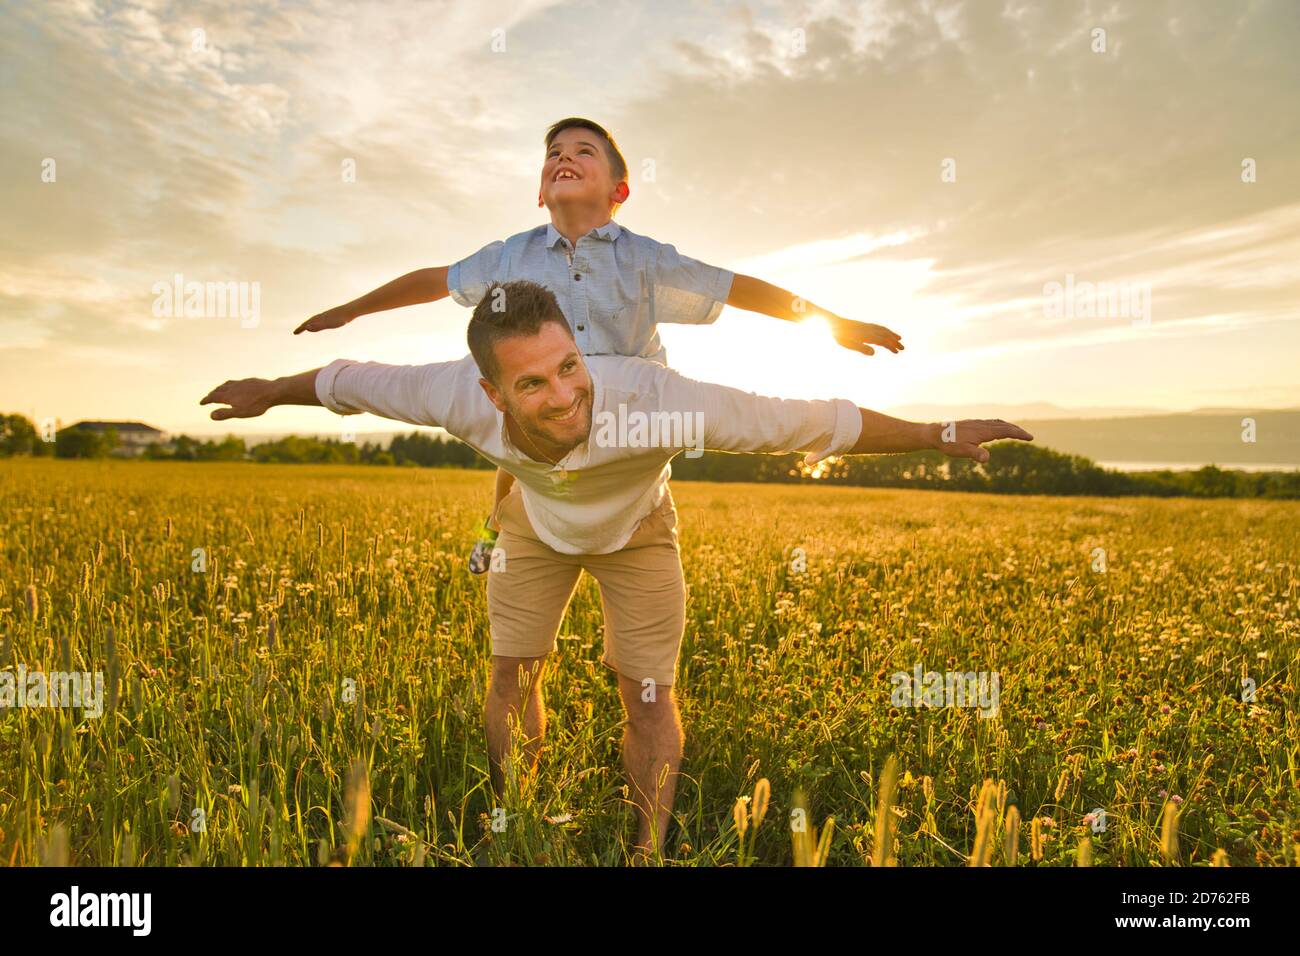 Die glückliche Familie des Vaters und des Kindes auf dem Feld bei der Sonnenuntergang Spaß auf dem Vater zurück Stockfoto